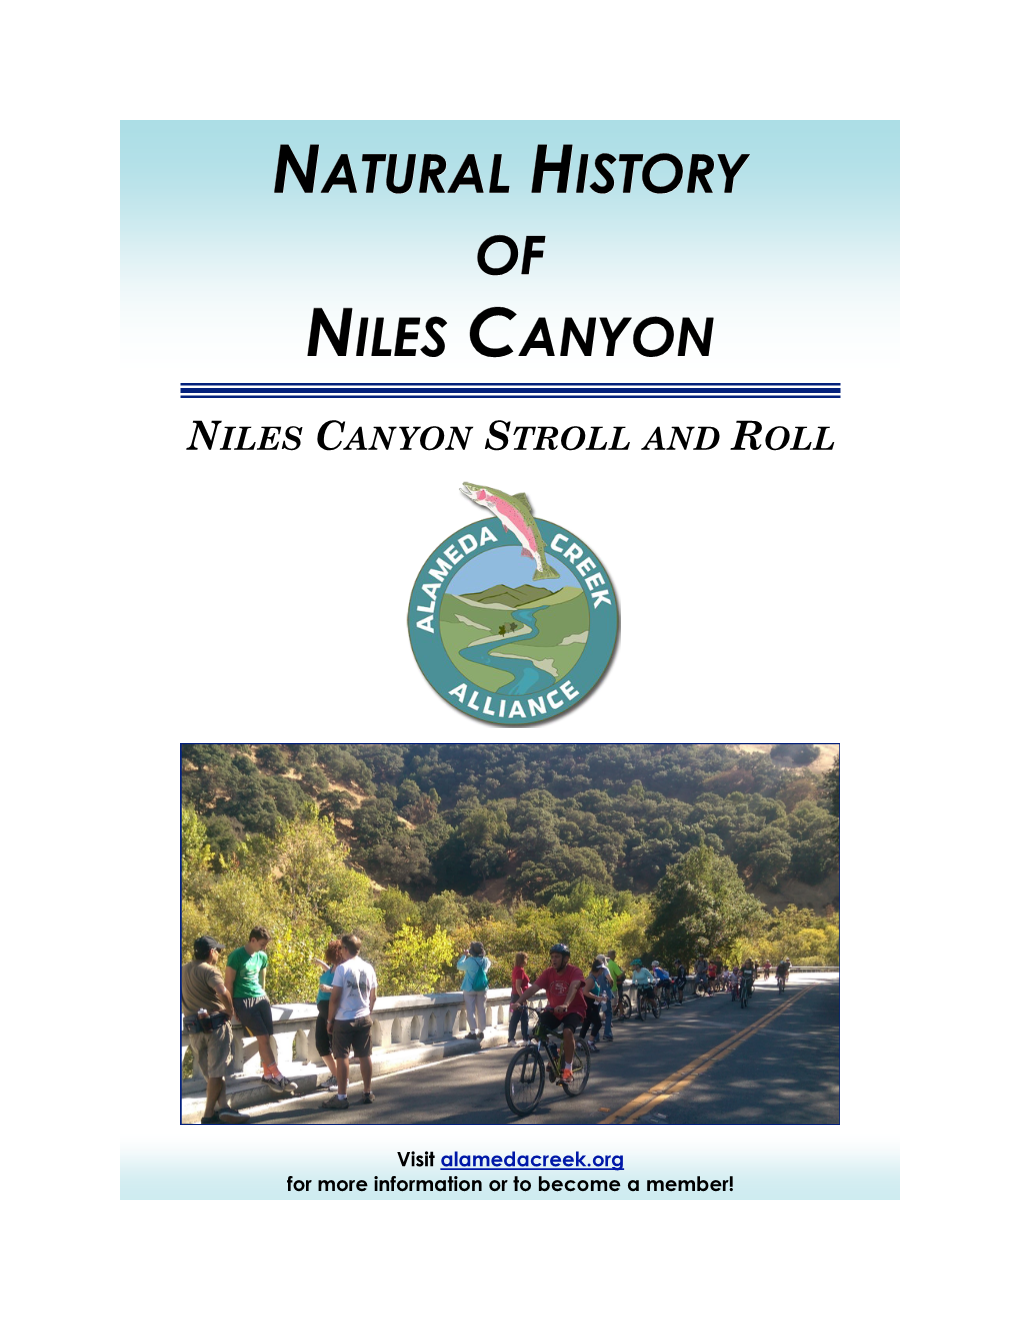 Natural History of Niles Canyon